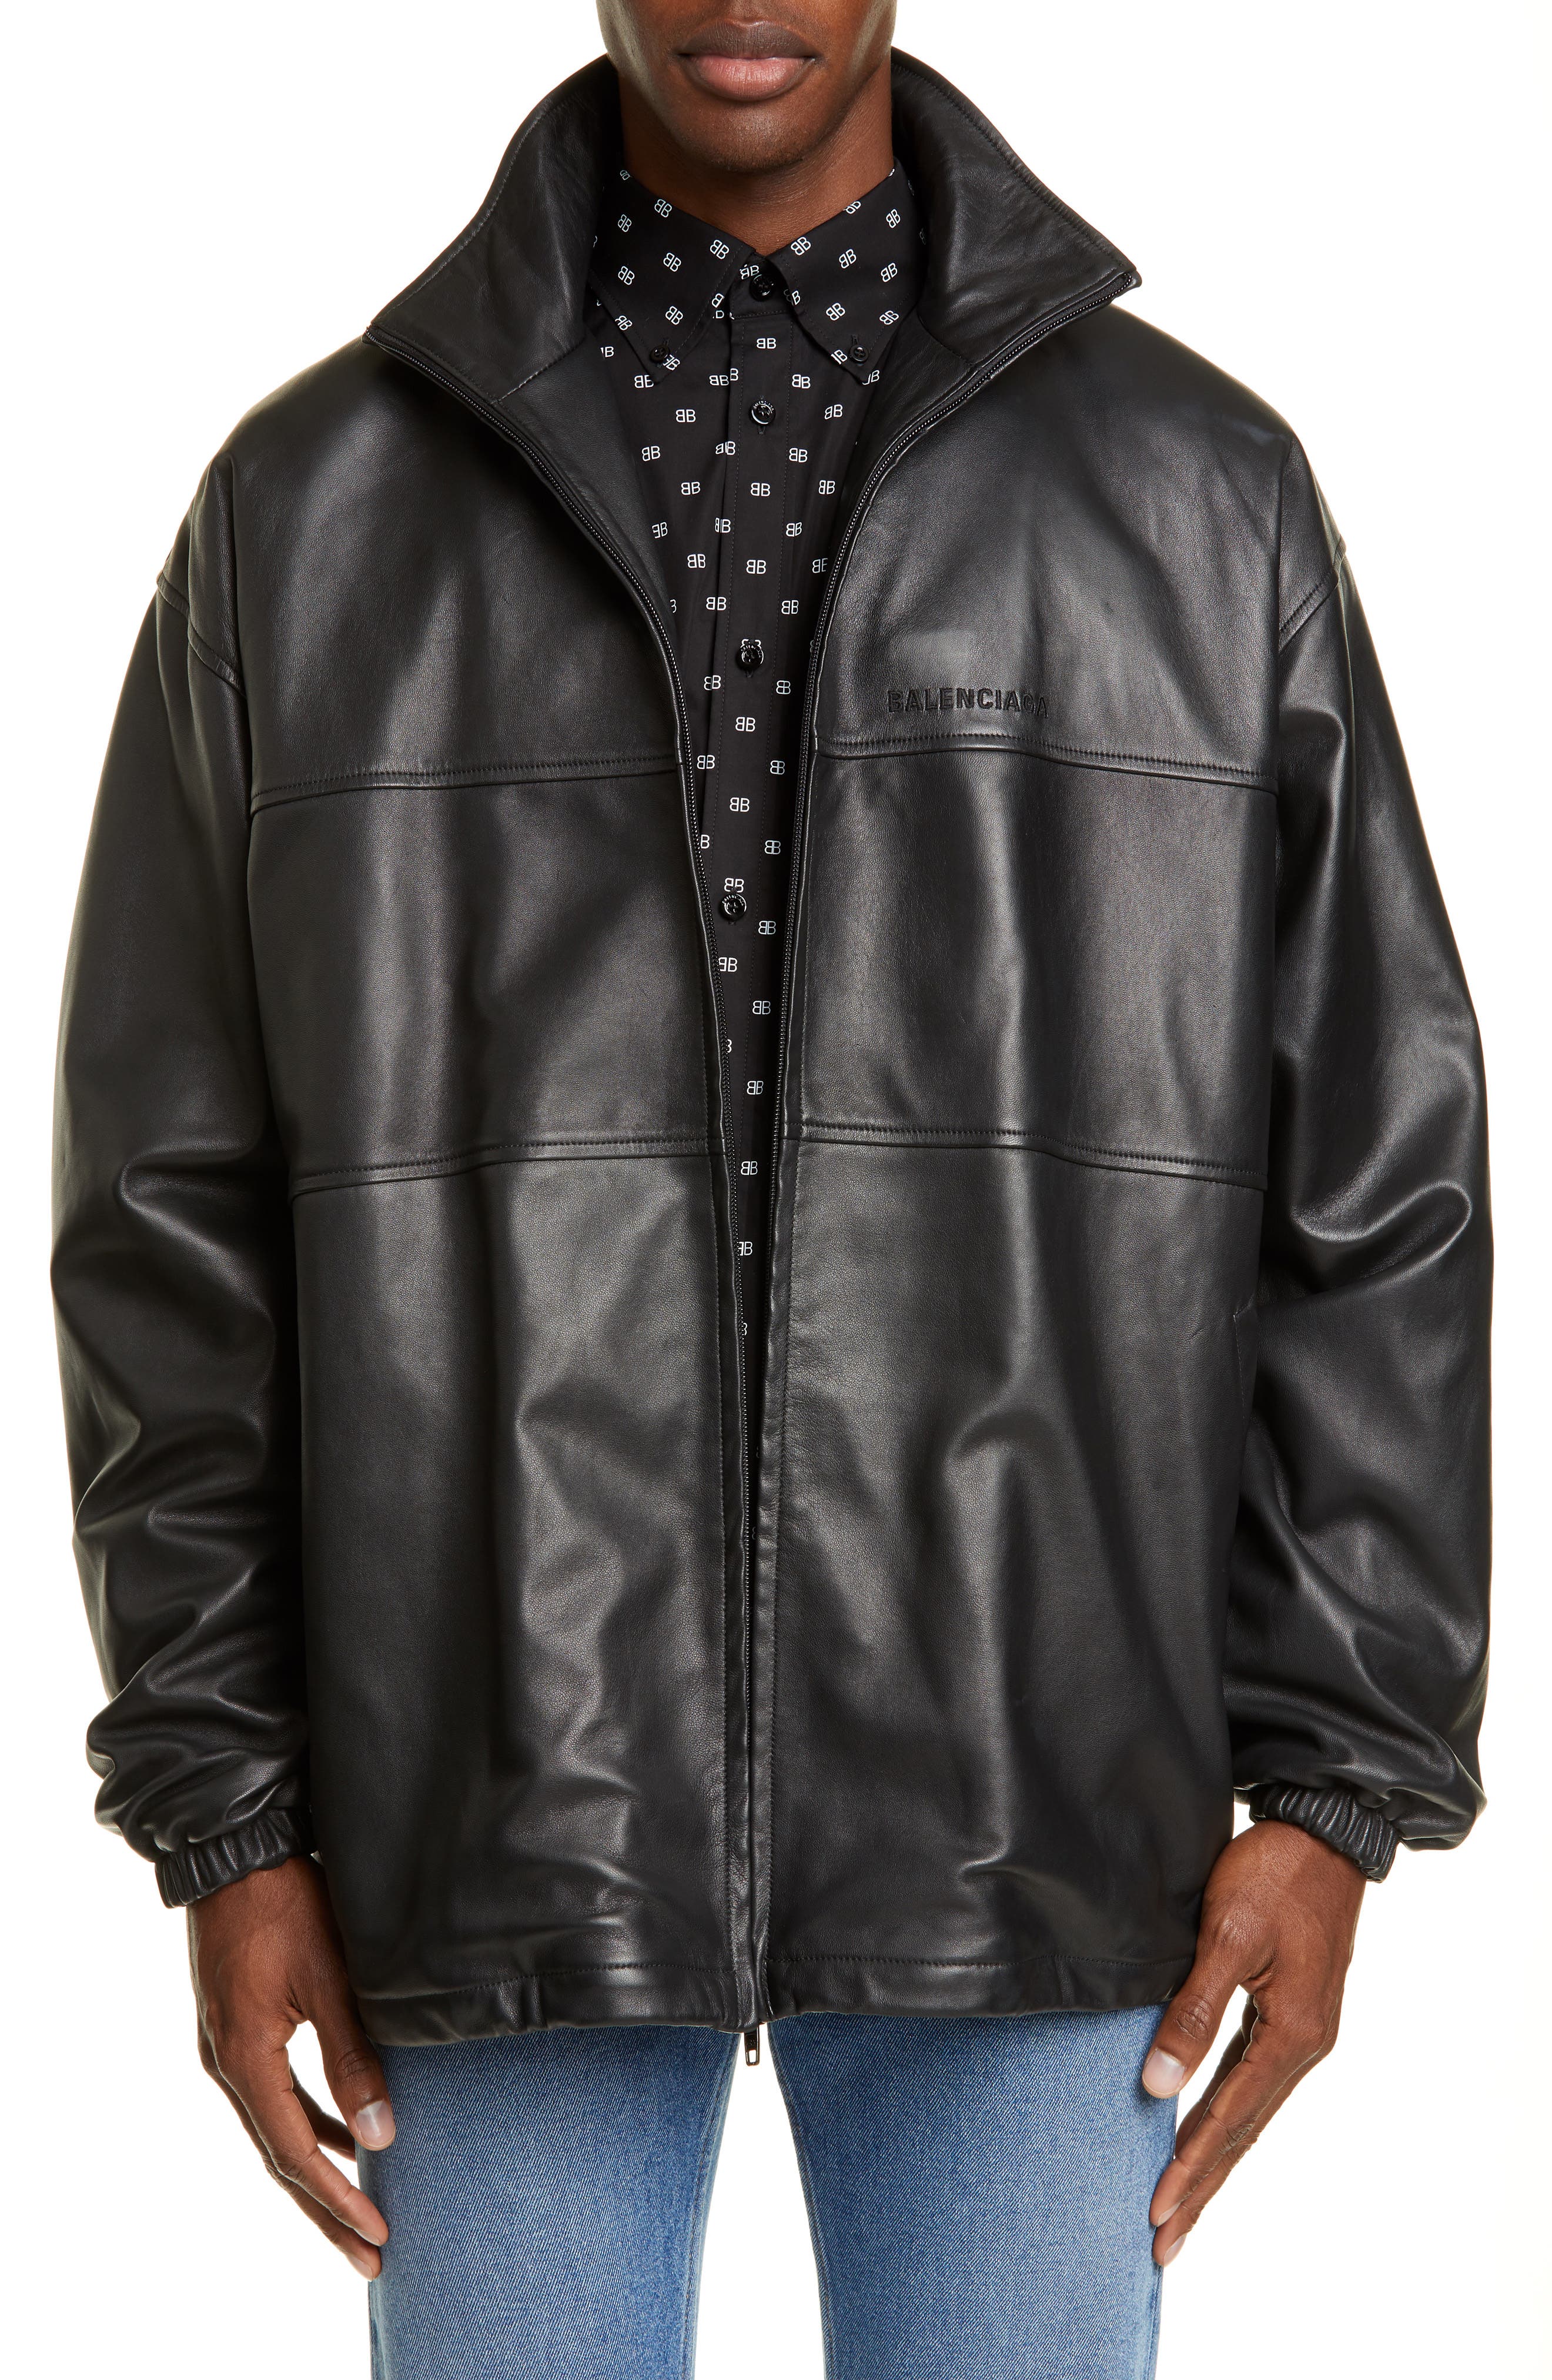 balenciaga leather jacket sizing